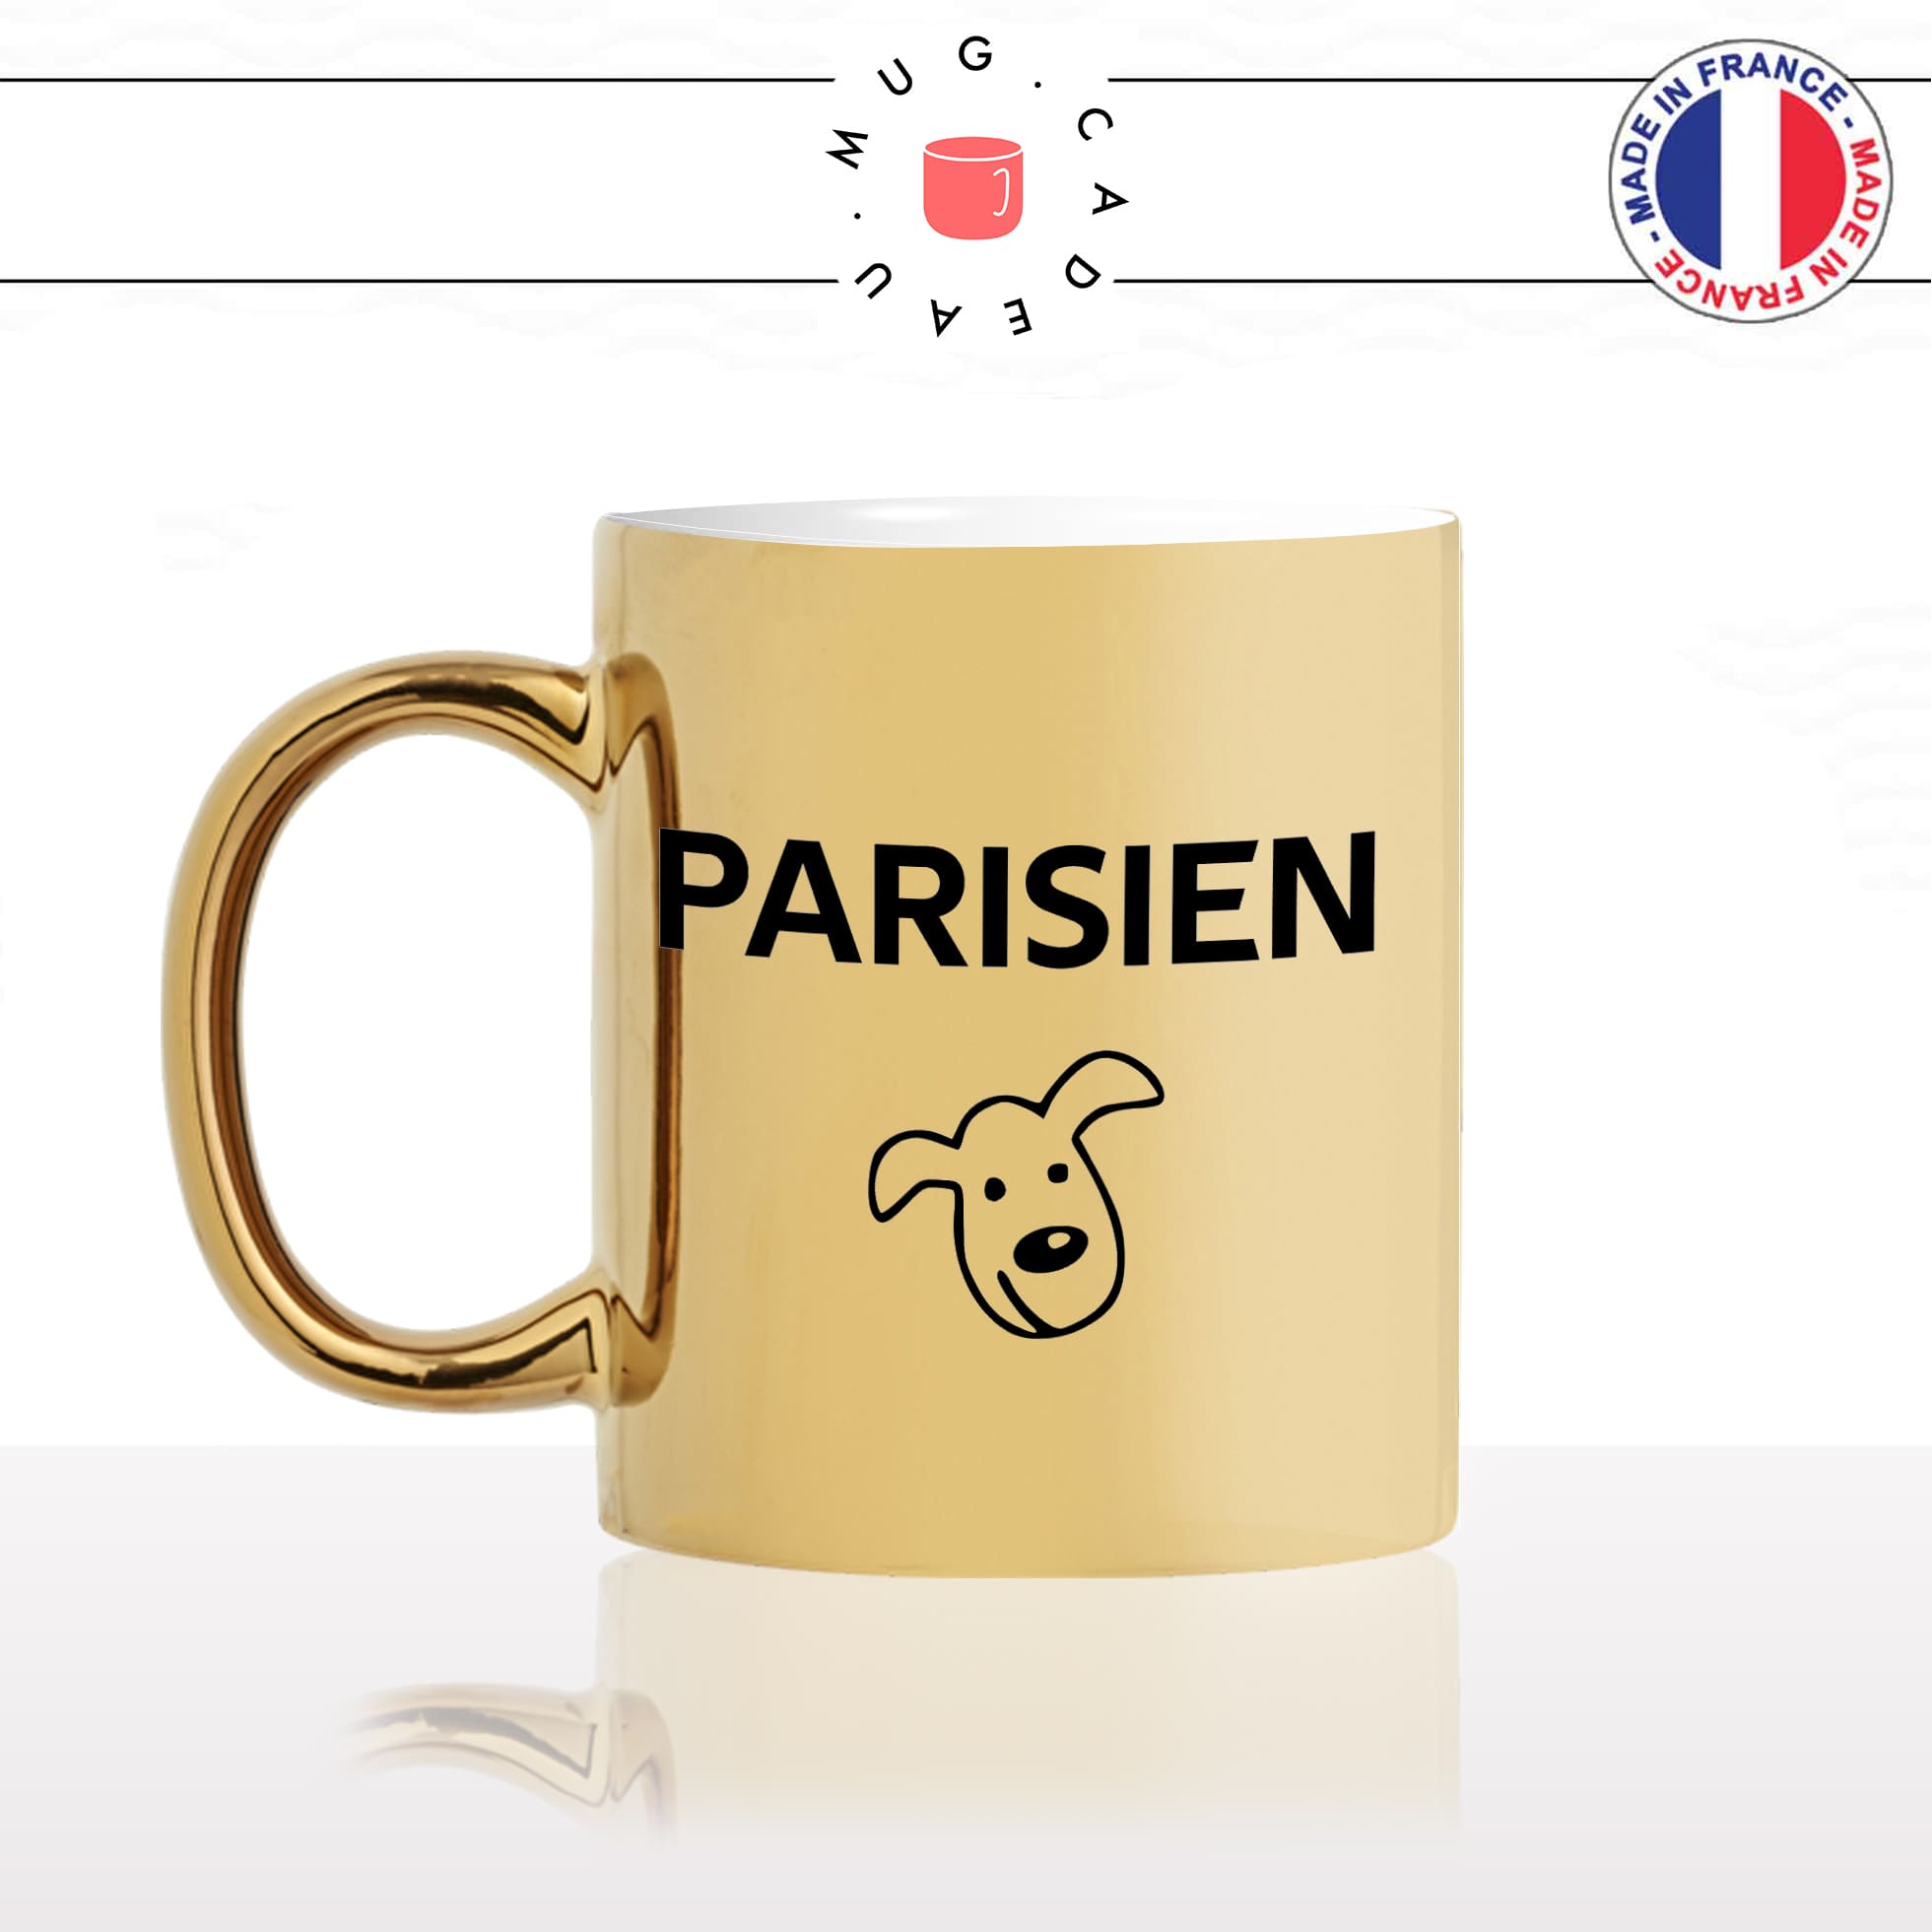 mug-tasse-or-gold-doré-brillant-parisien-tete-de-chien-parigot-tete-de-veau-citation-paris-francais-france-humour-idée-cadeau-originale-fun-unique